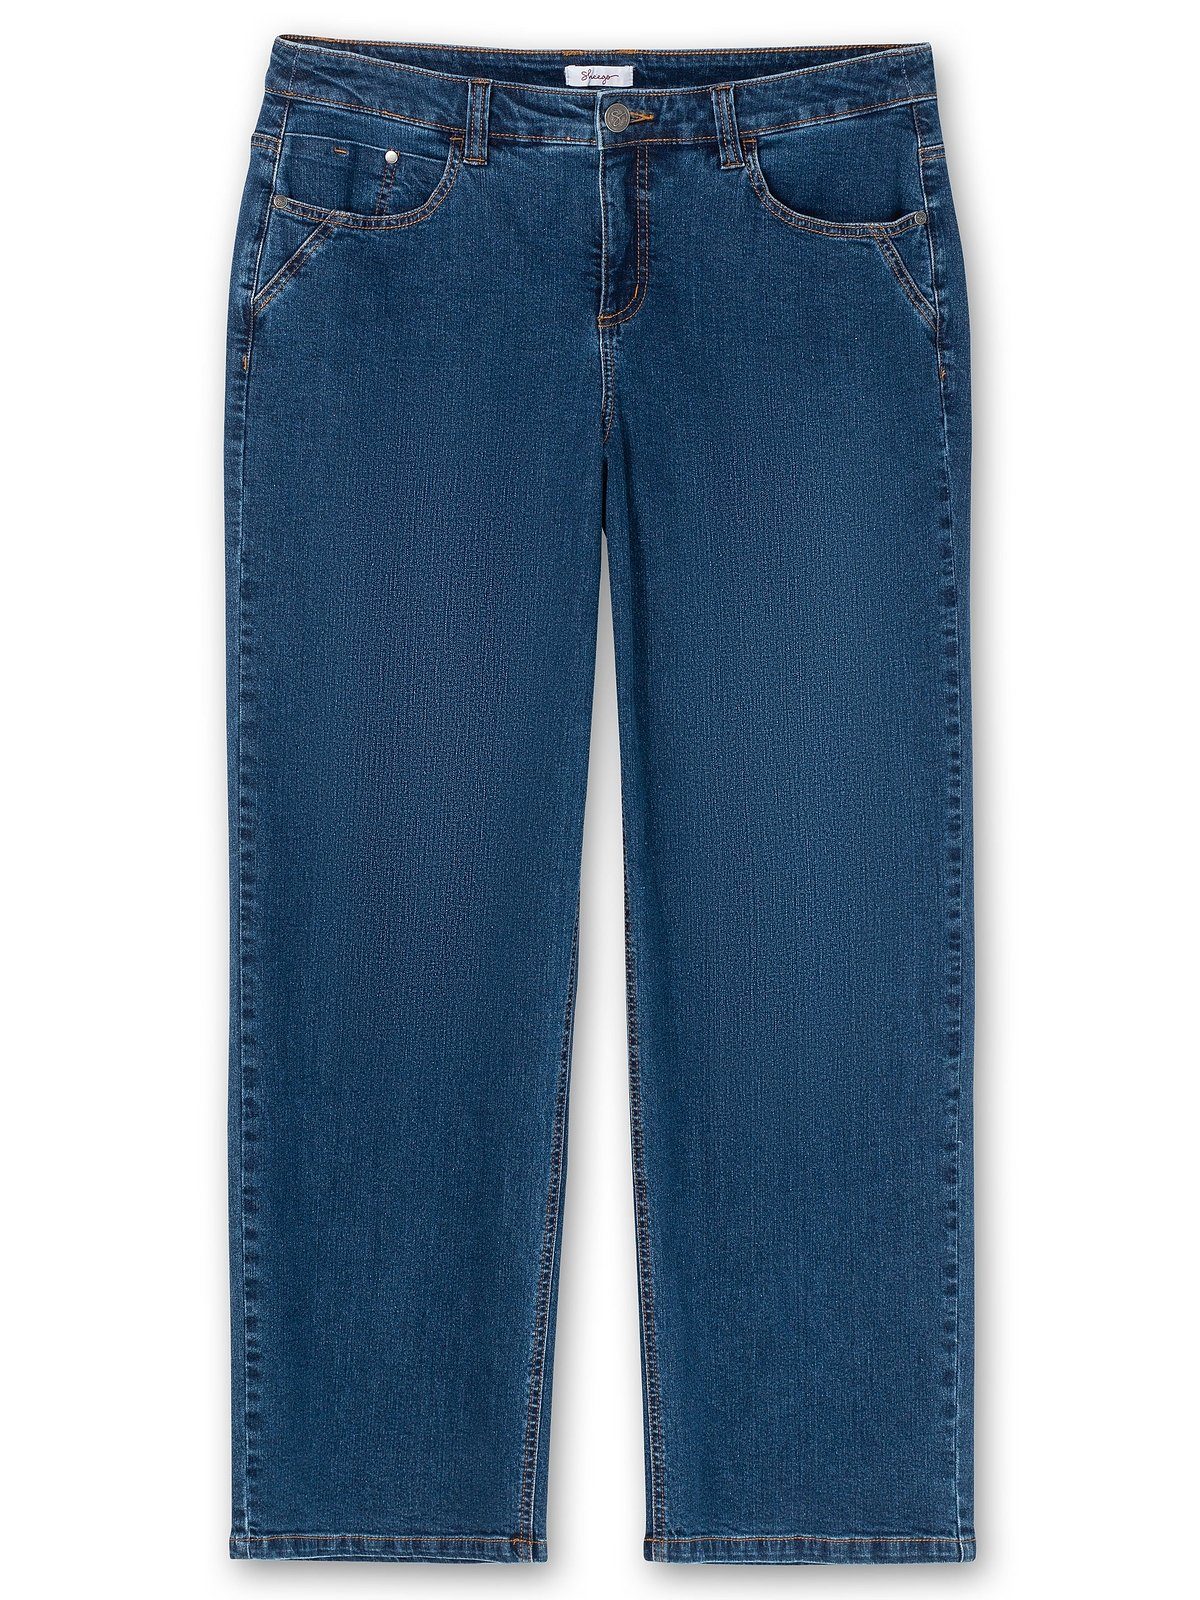 Waden Große Weite ELLA Denim Jeans Oberschenkel kräftige blue und dark Sheego für Größen